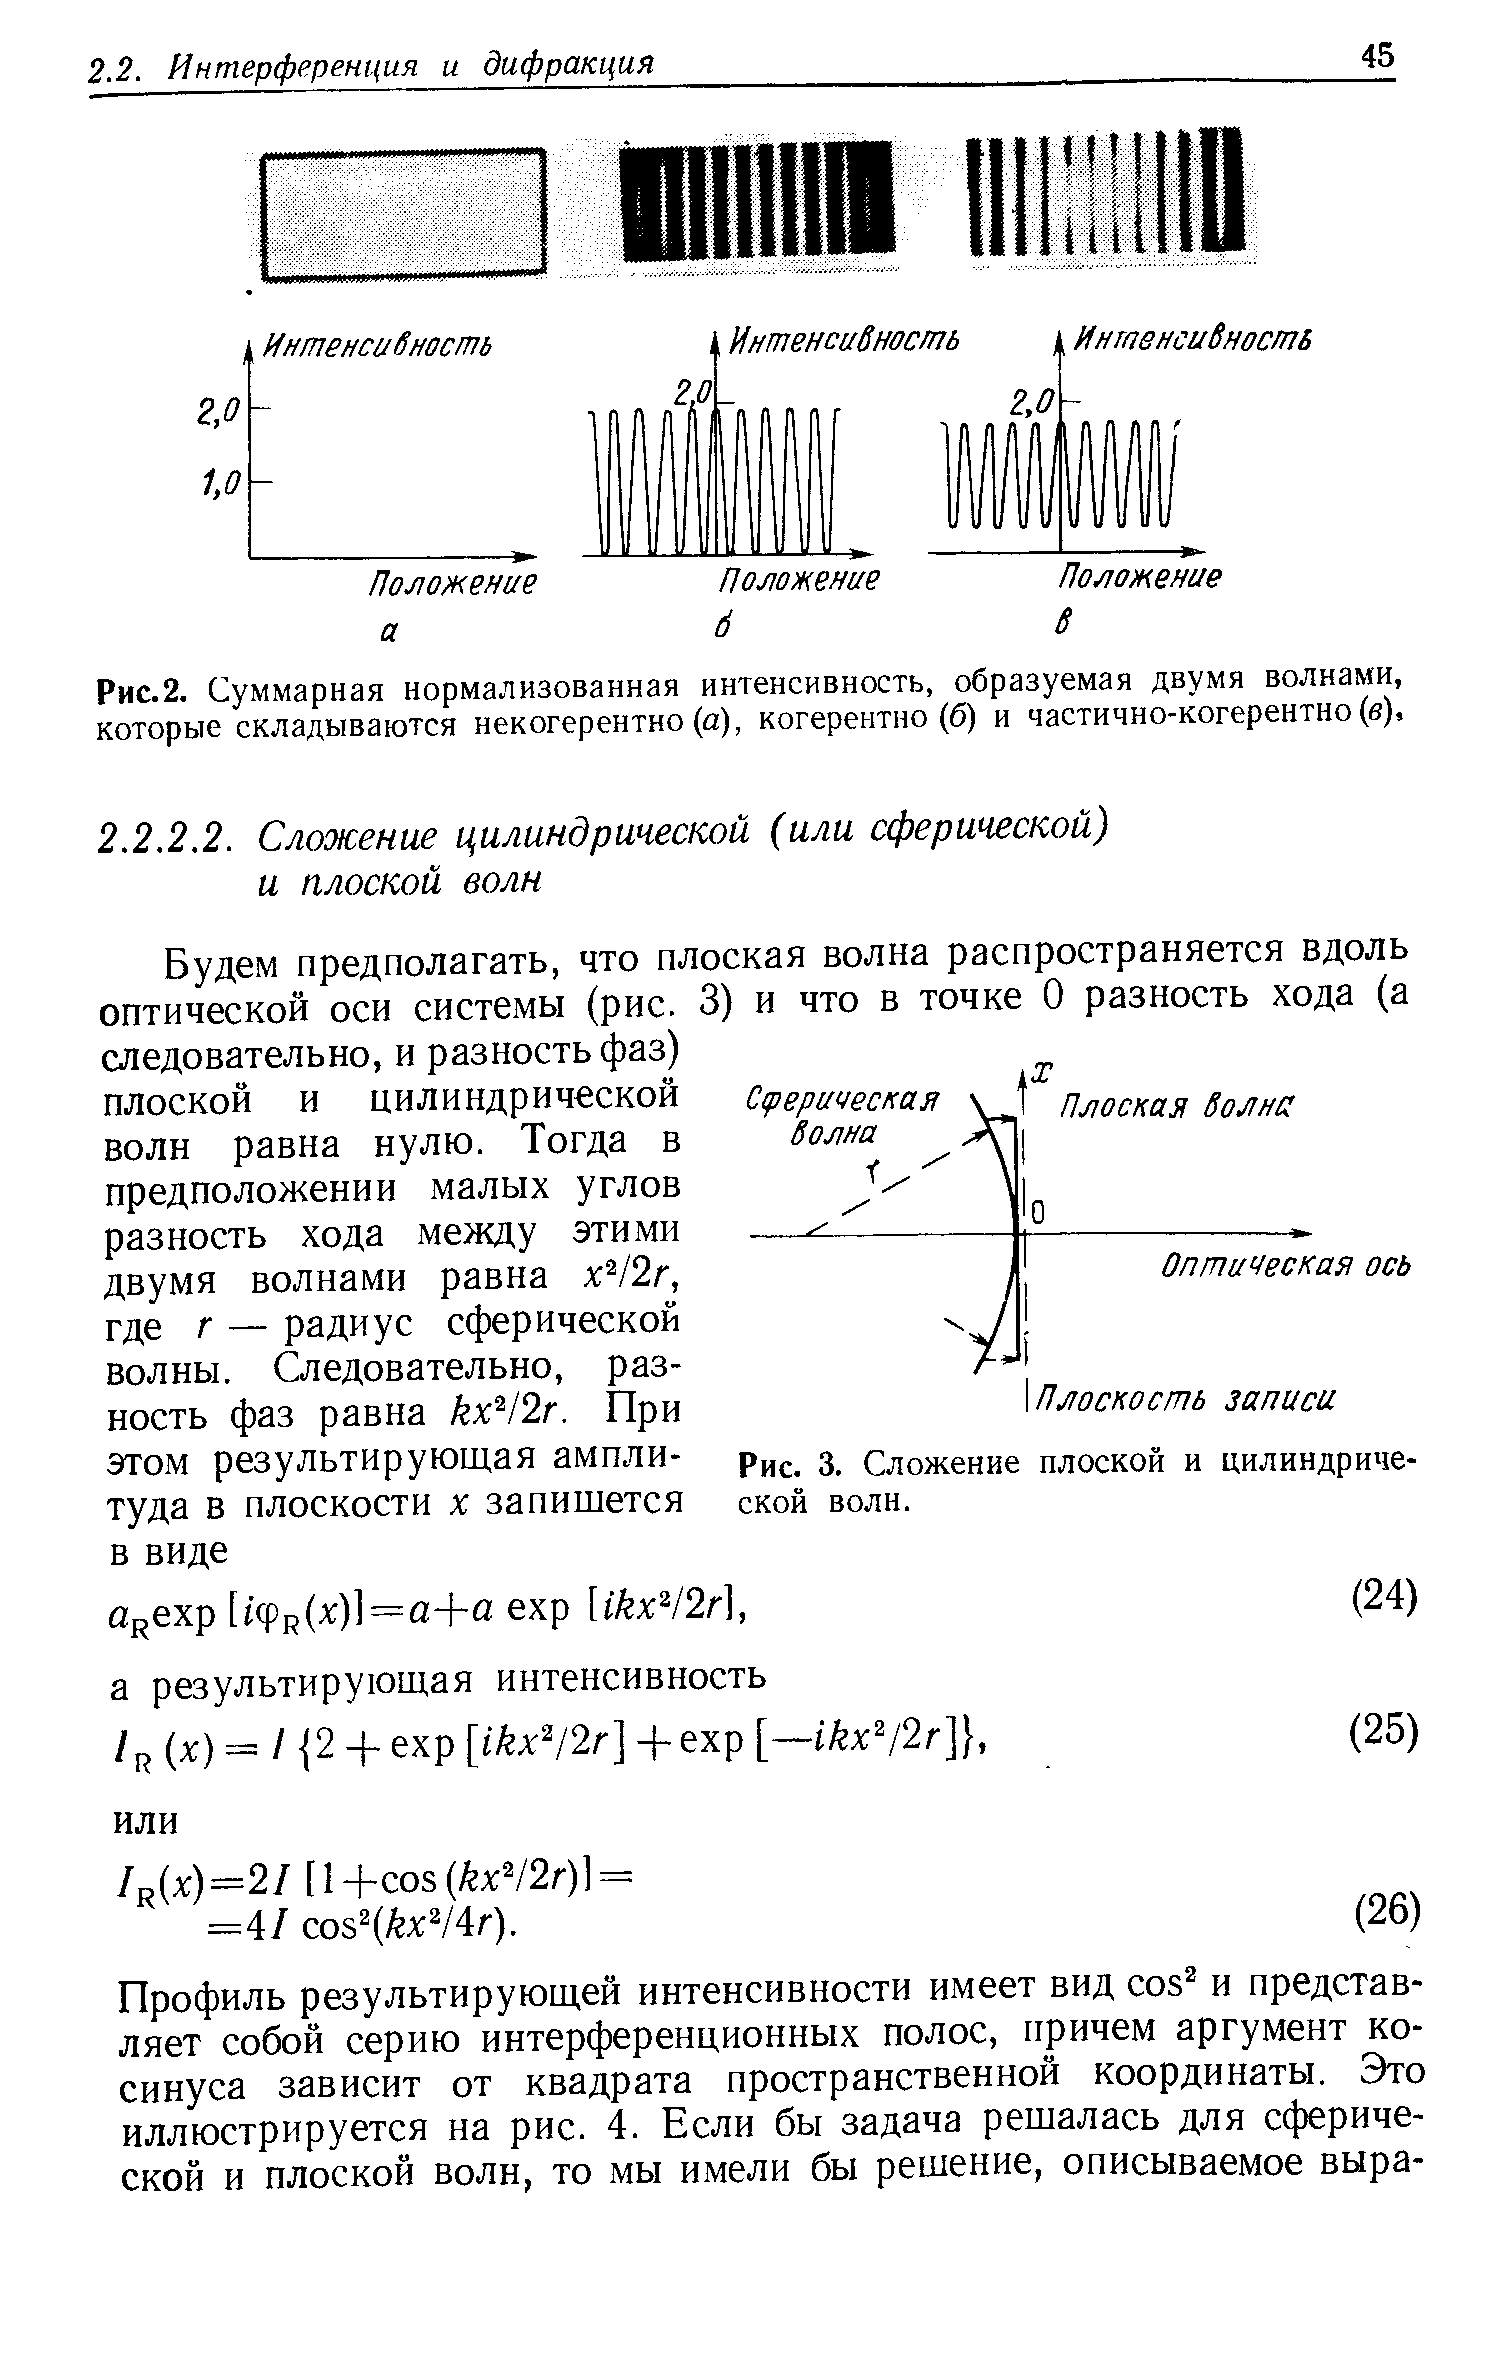 Рис.2. Суммарная нормализованная интенсивность, образуемая двумя волнами, которые складываются некогерентно (а), когерентно (б) и частично-когерентно (в).
